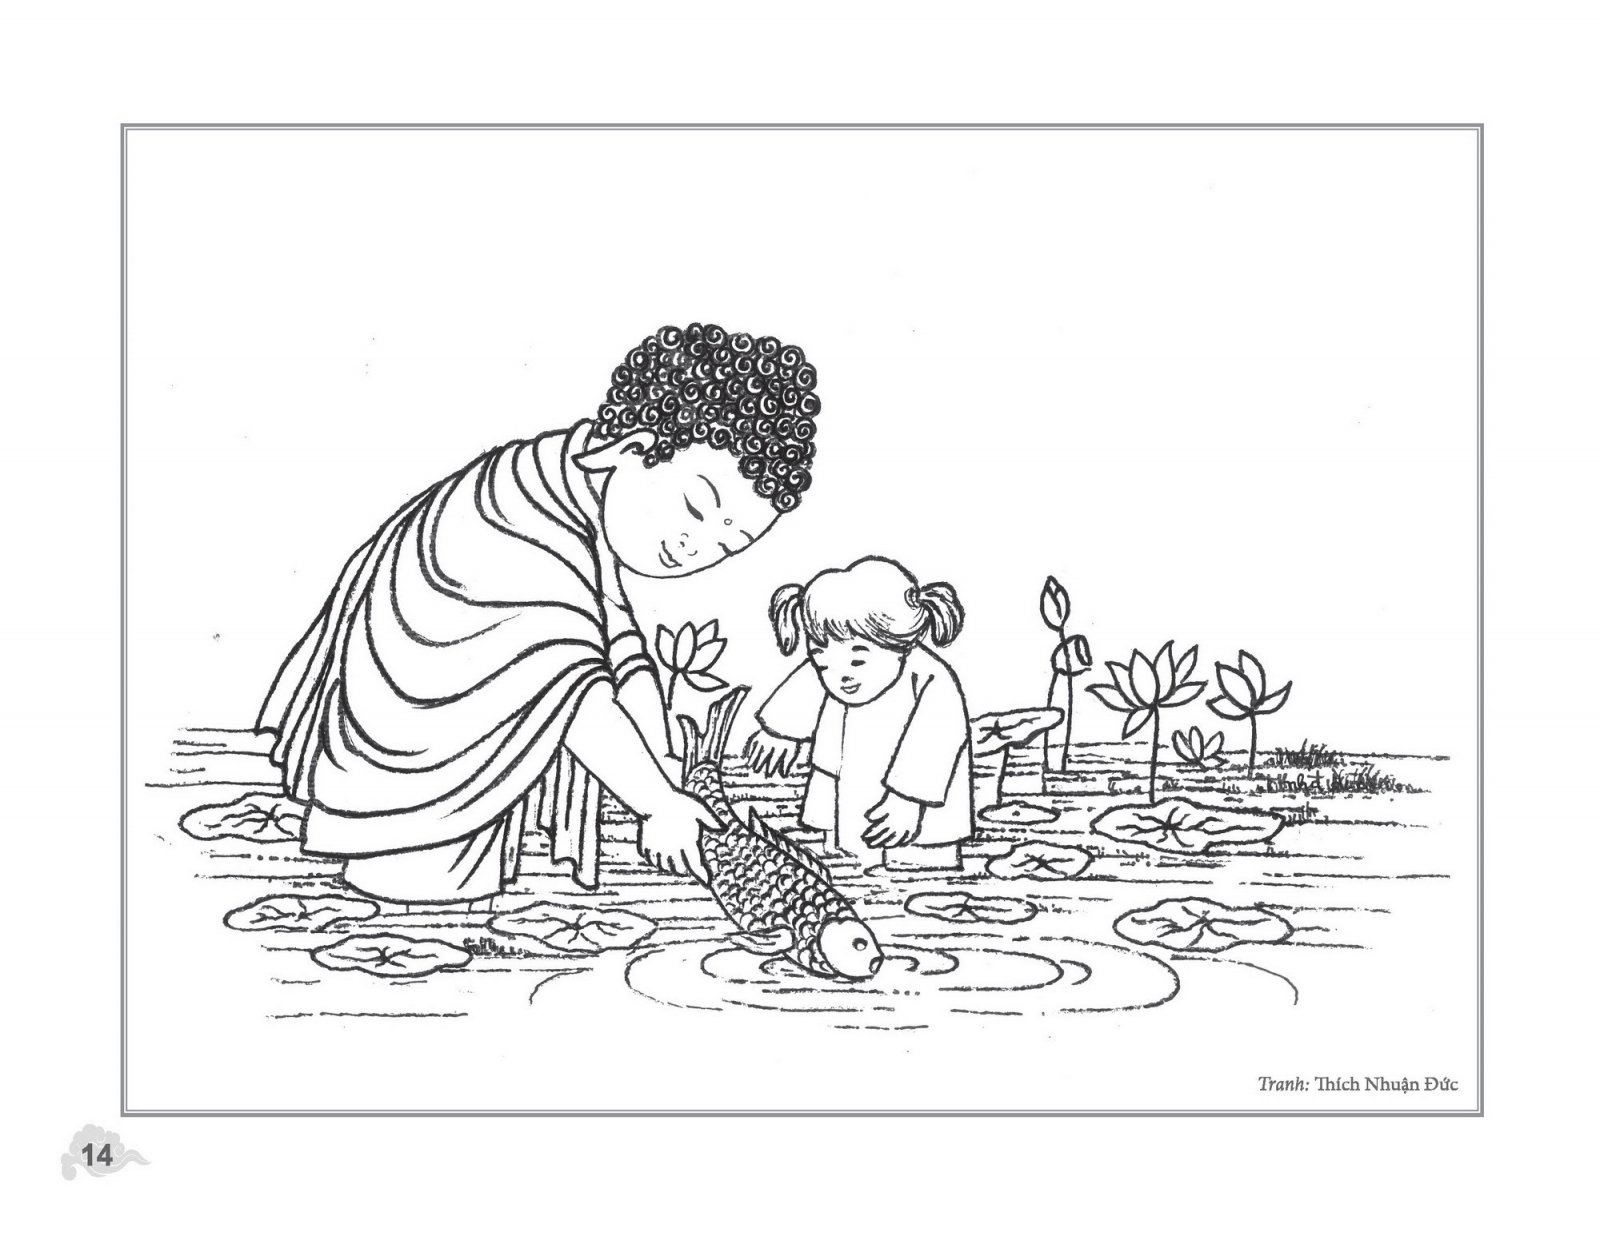 Đức Phật với tuổi thơ nhìn từ tranh vẽ